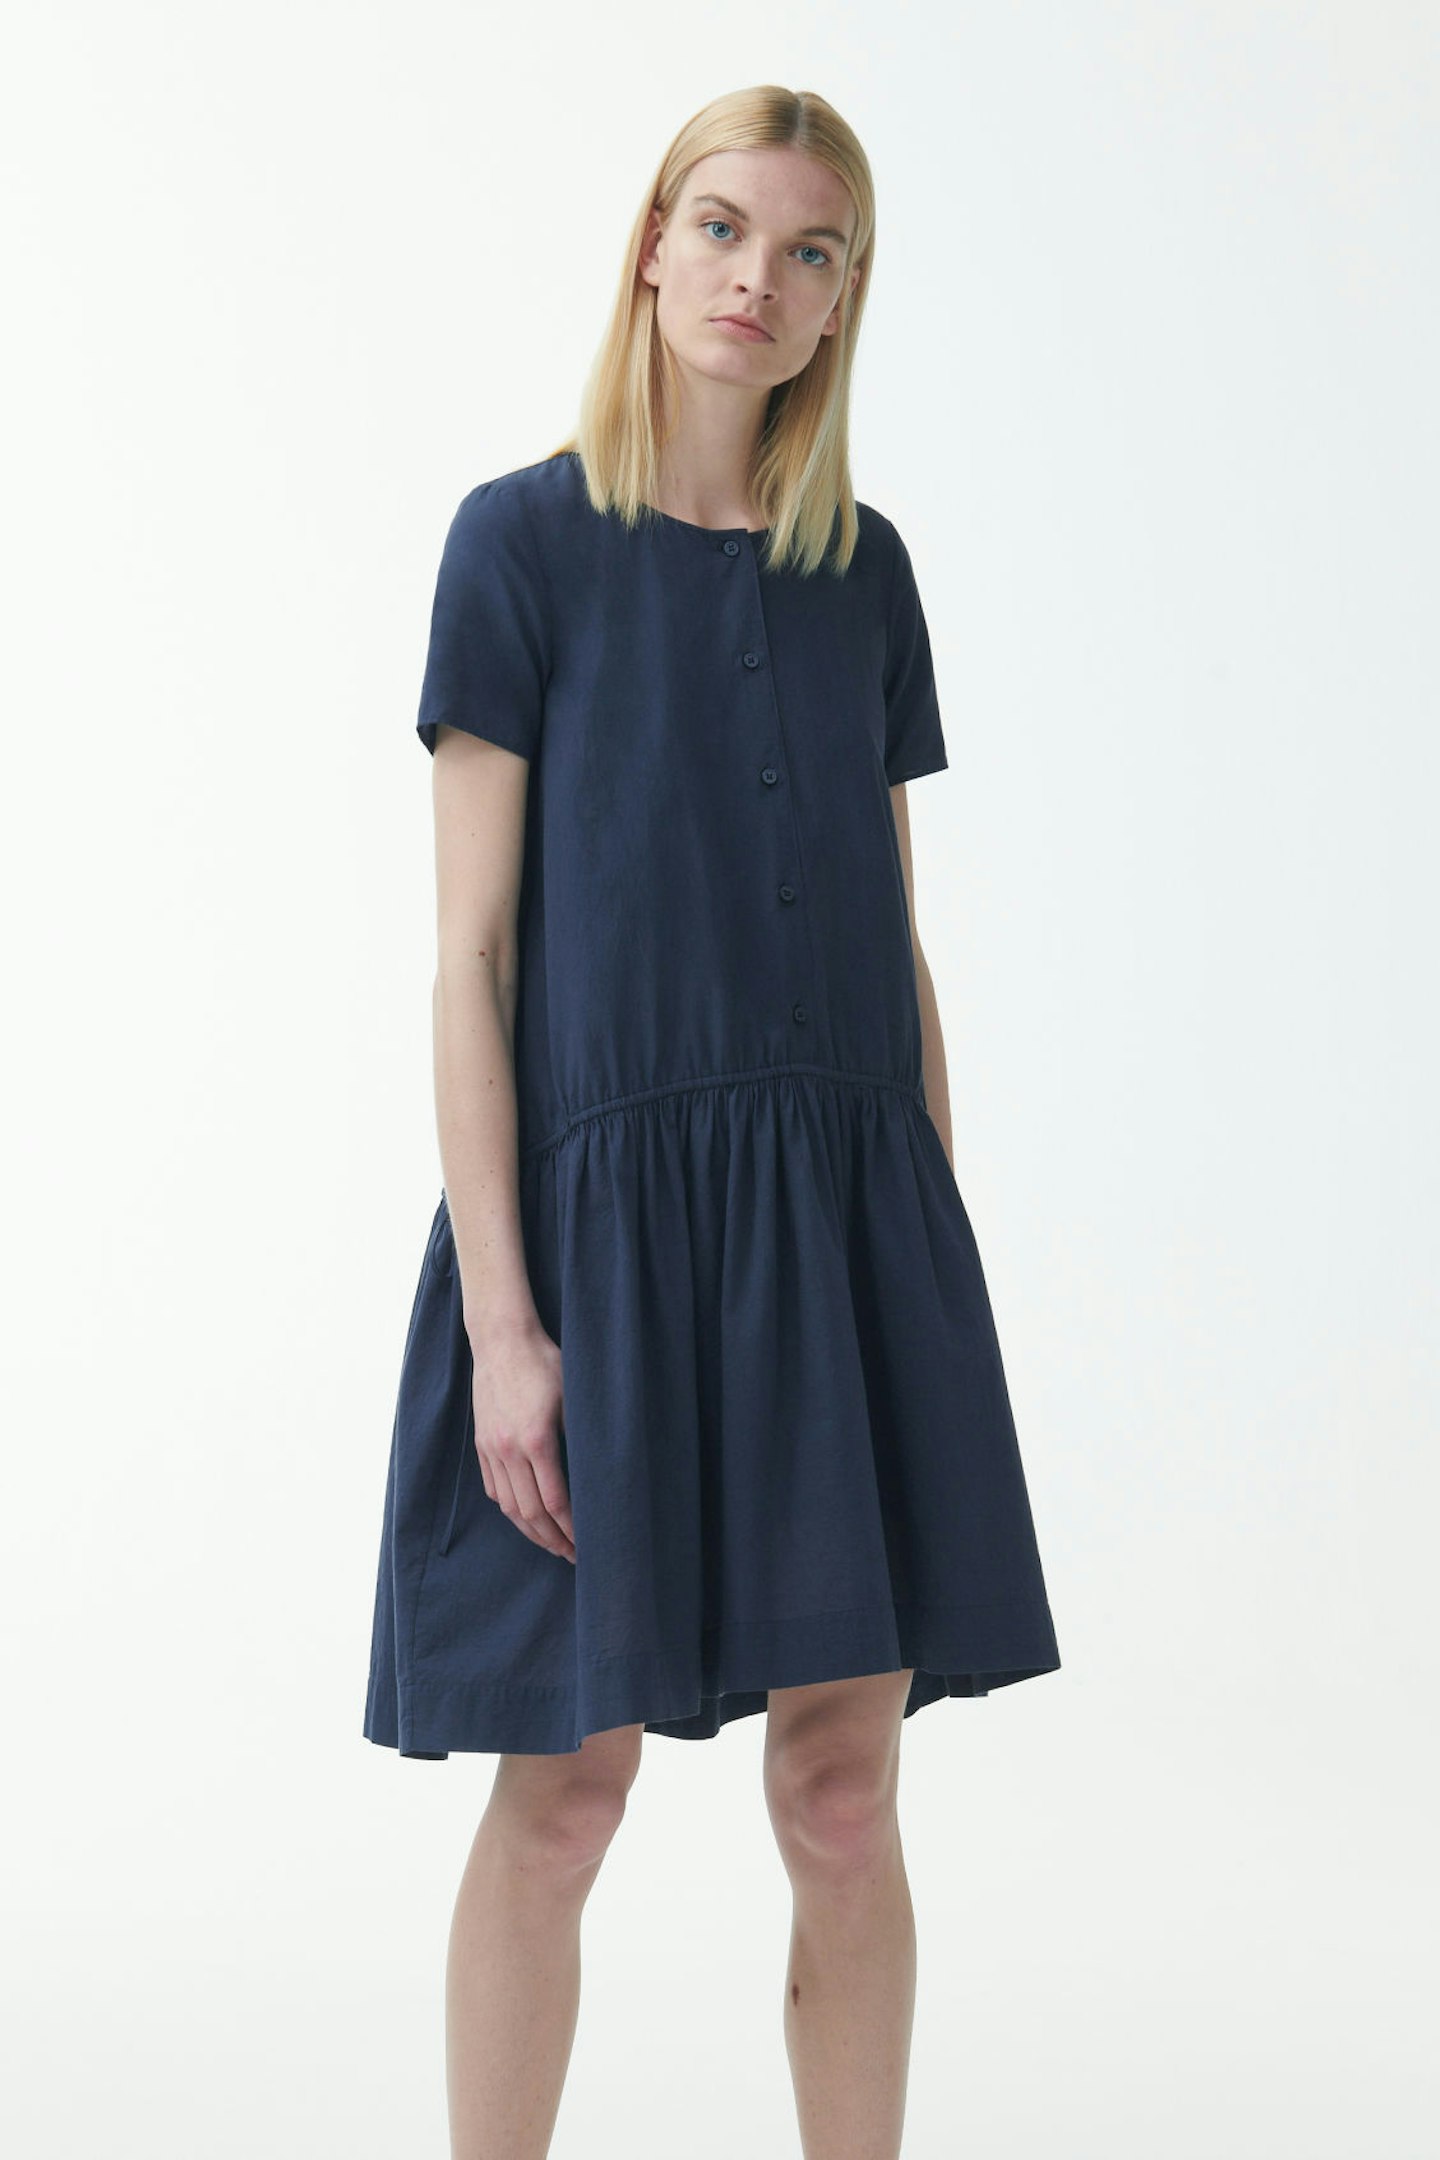 COS, Organic Cotton Dress, £69